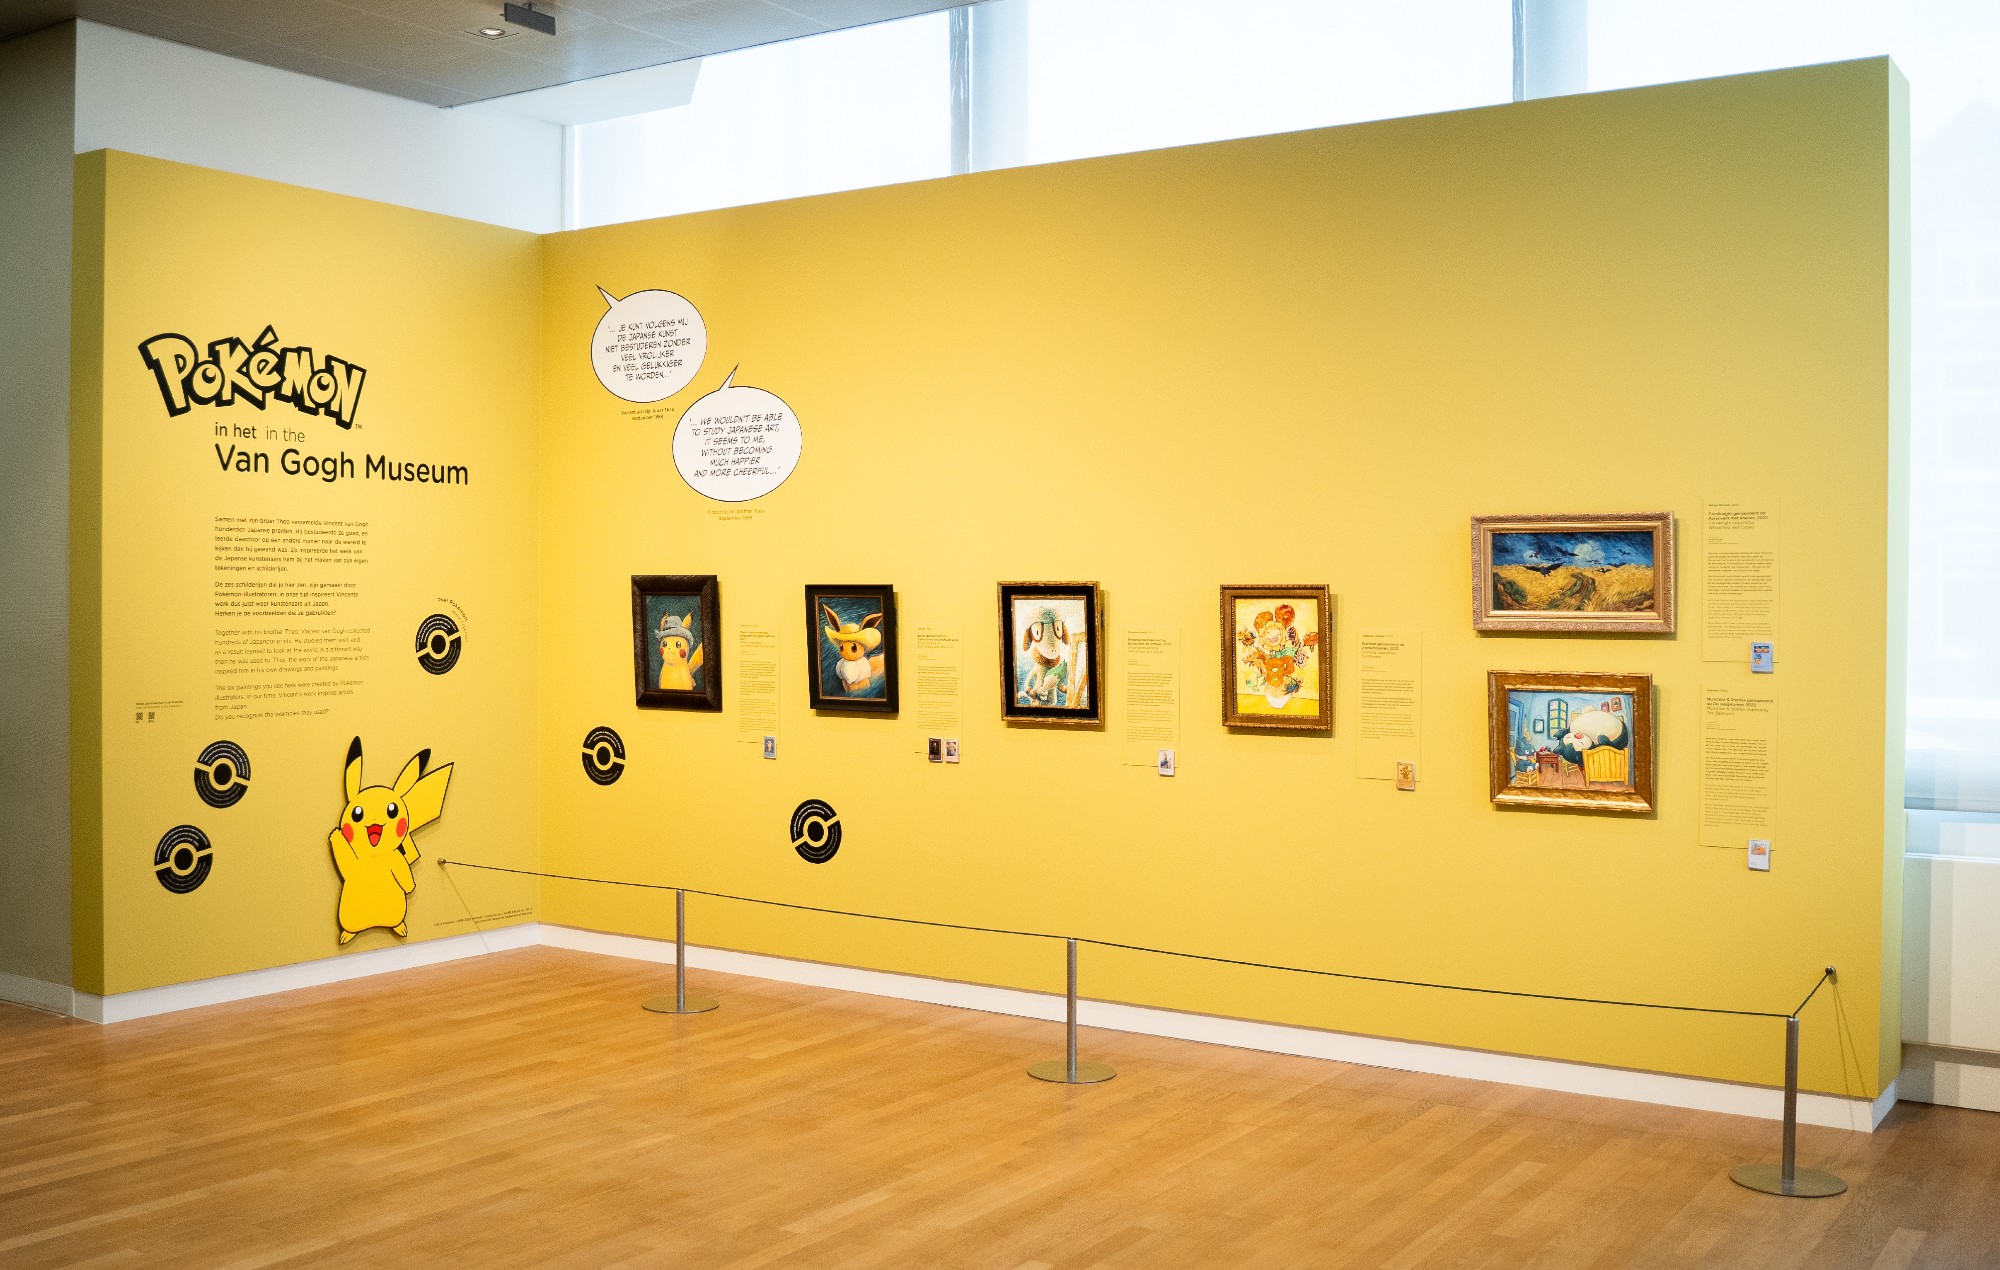 Des employés du musée Van Gogh suspendus suite à « l'incident » de « Pokémon »